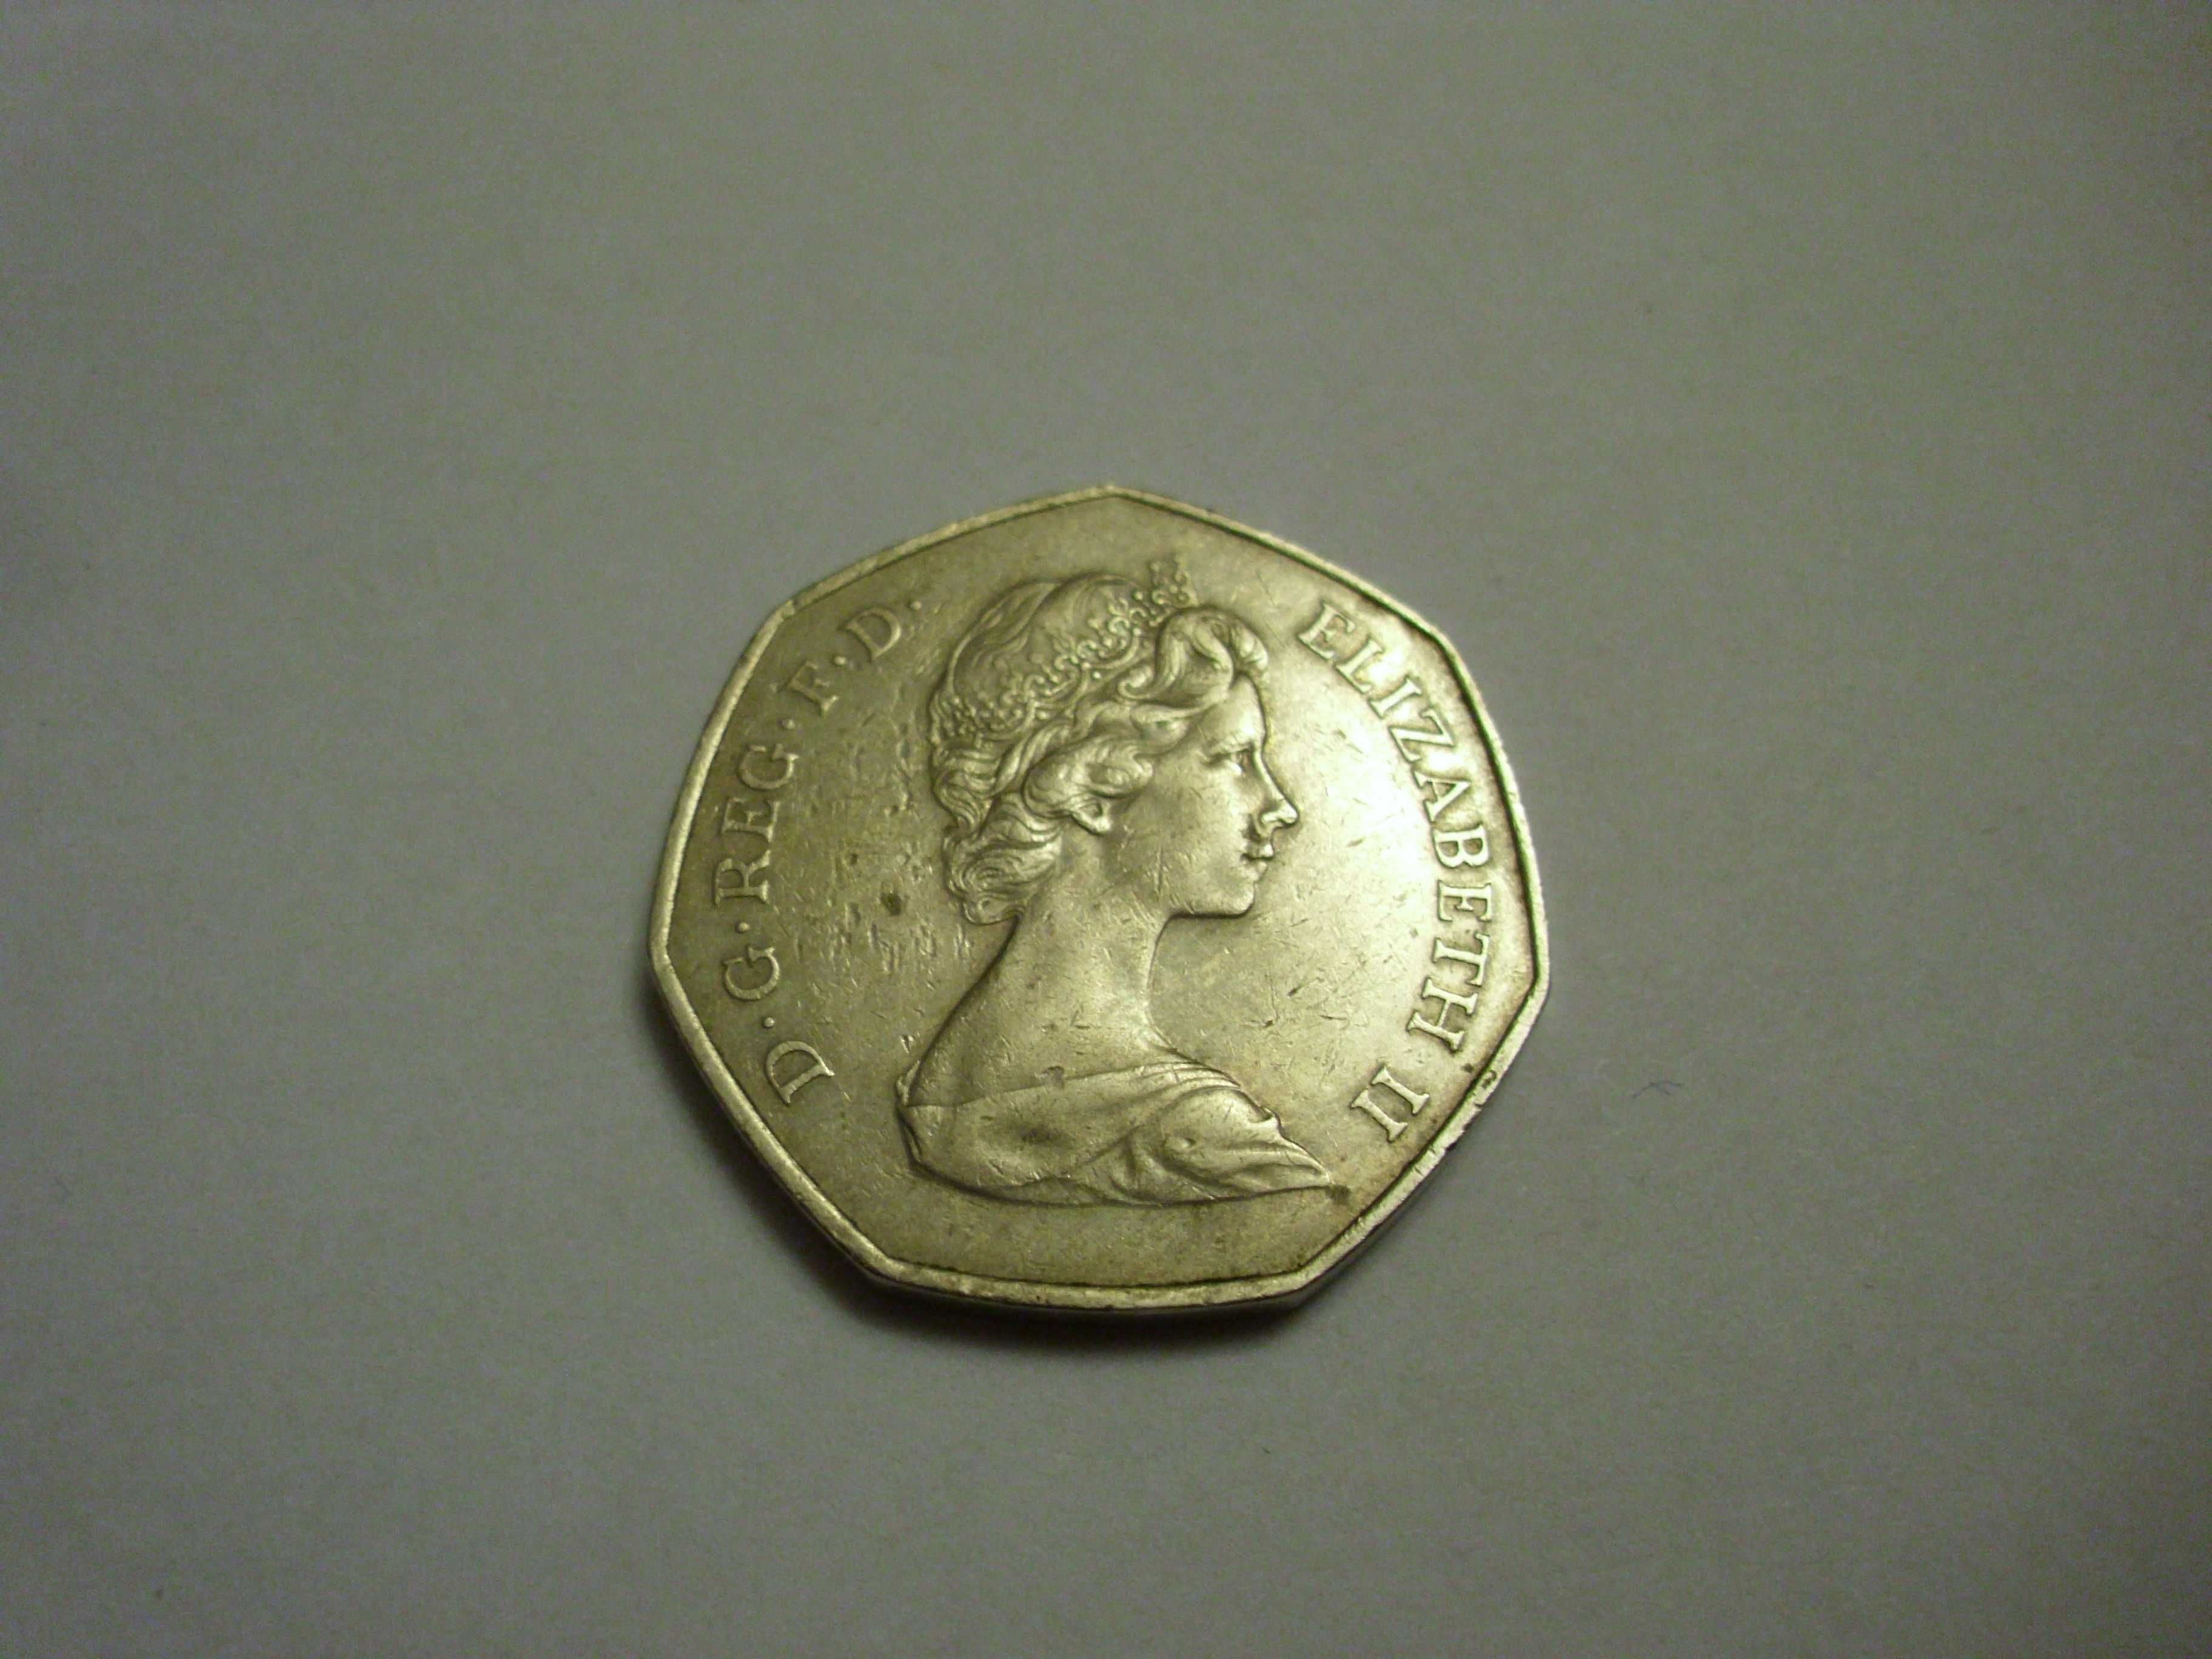 Elizabeth II DG REG FD - 1973 r. 50 pence